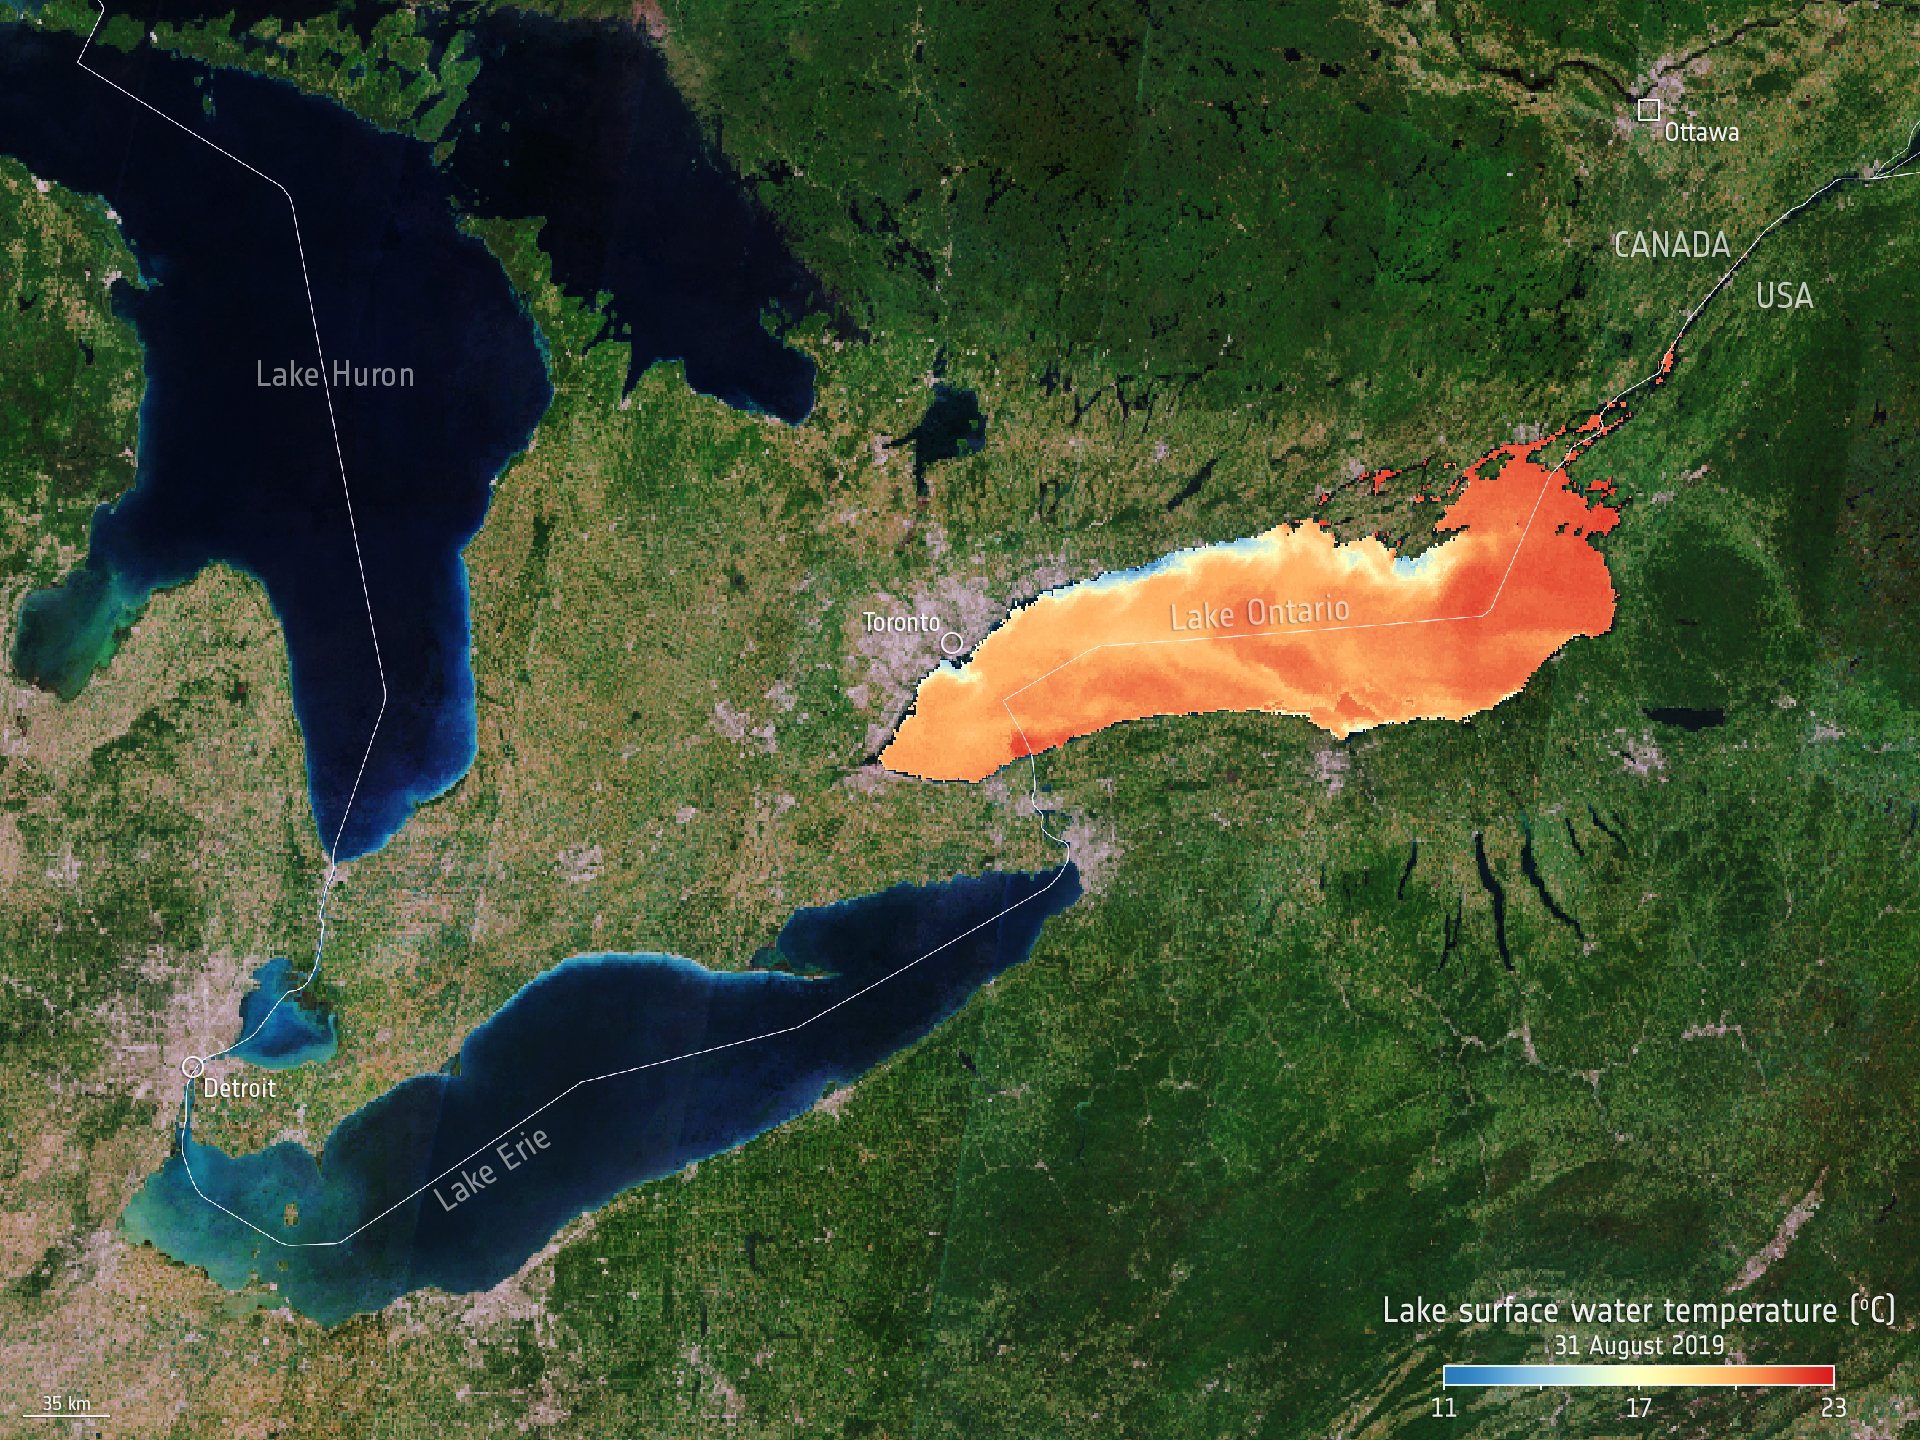 Lake Ontario surface temperture